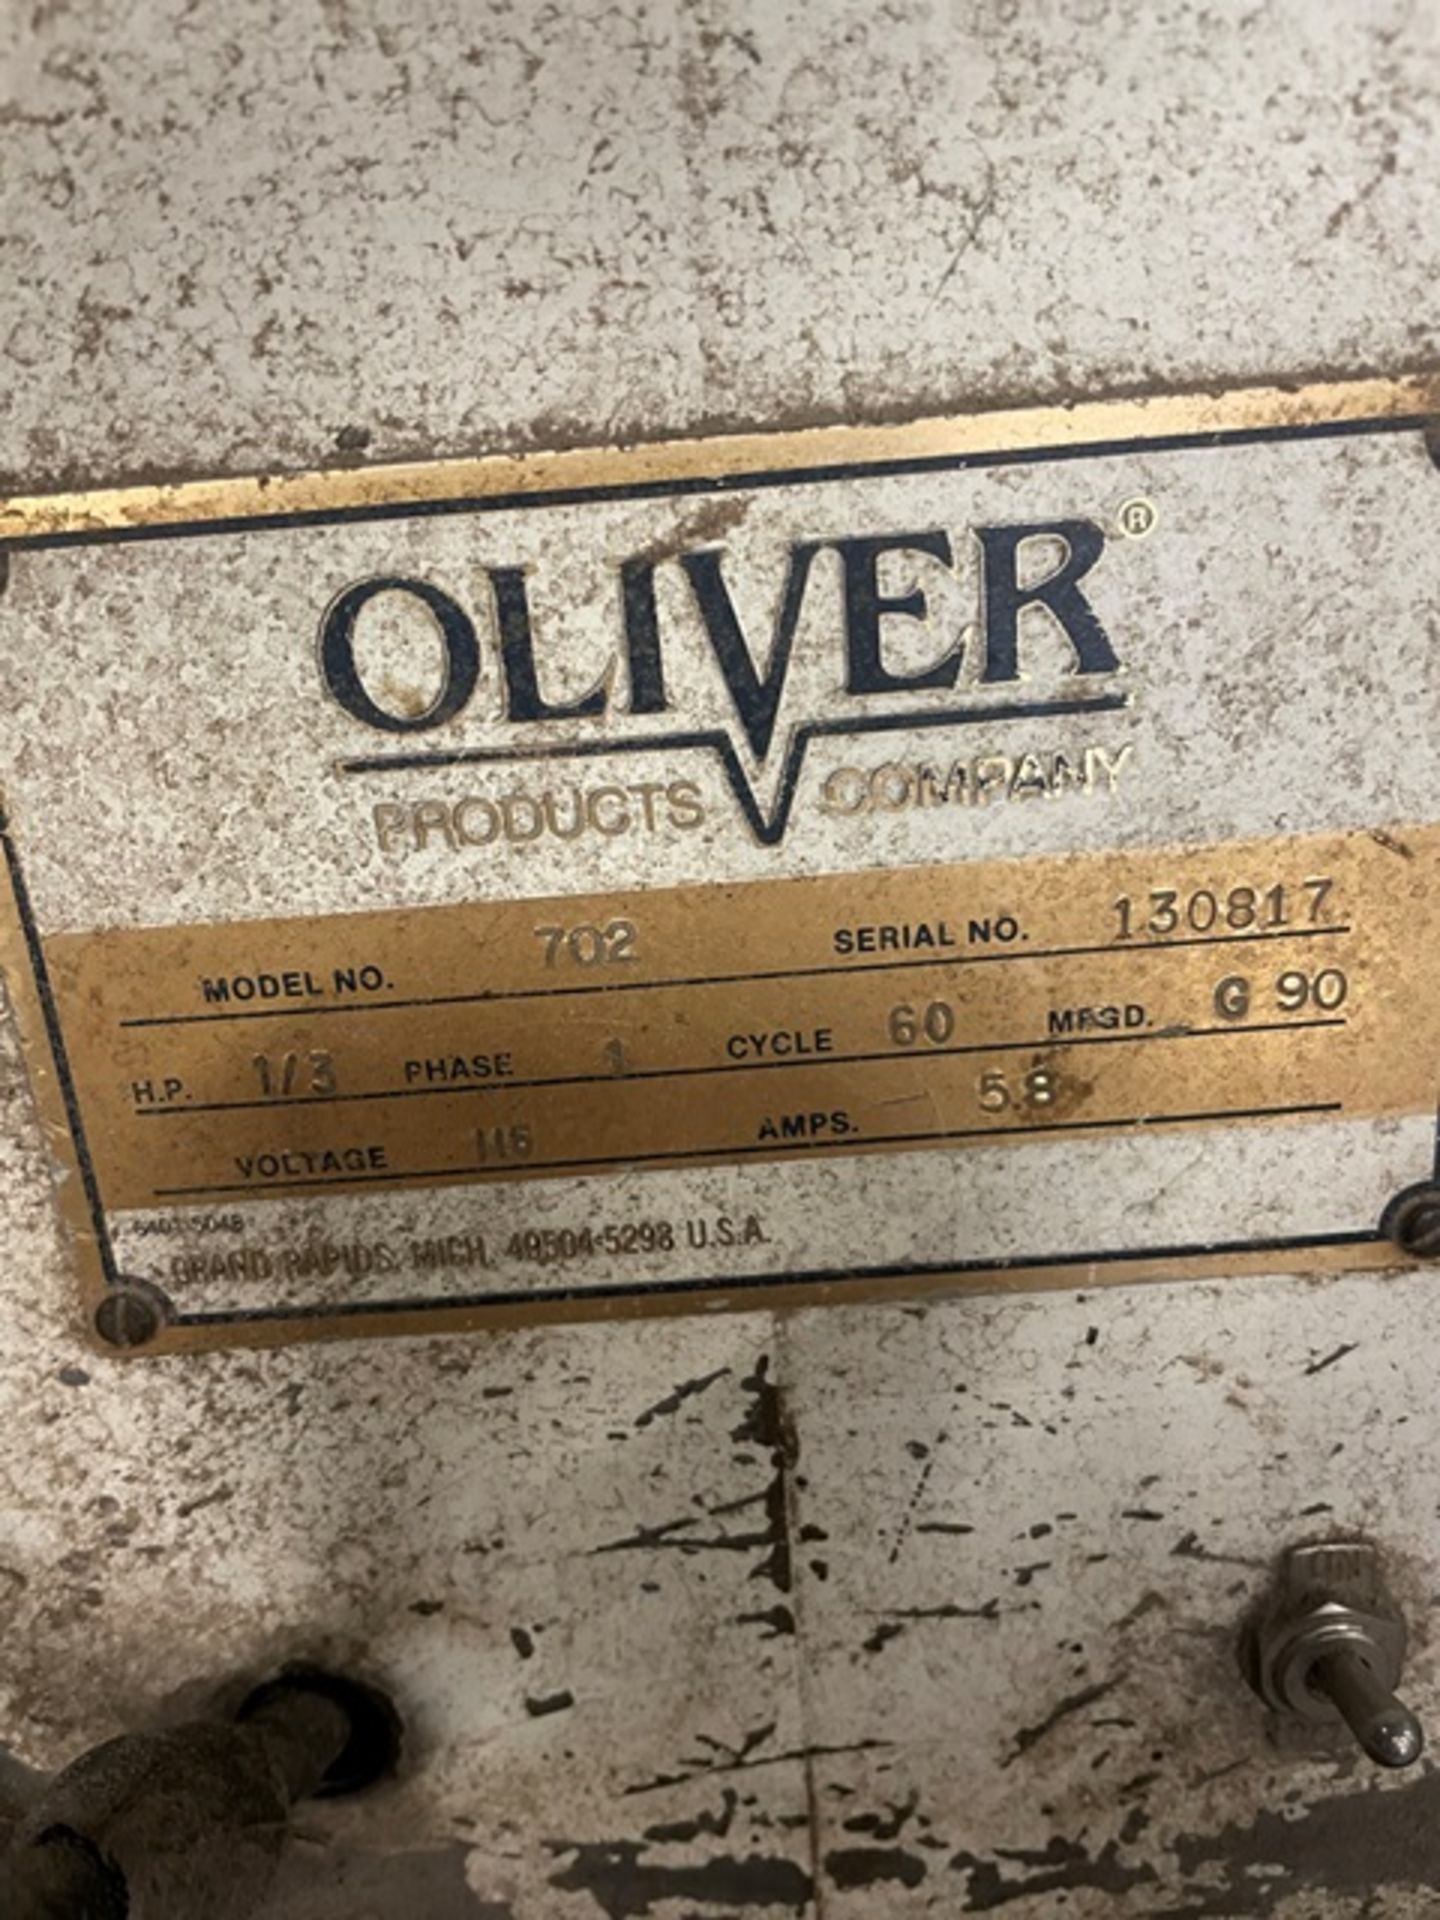 Oliver Model #701 Slicer, 115 Volt, SN 130817 - Image 3 of 3